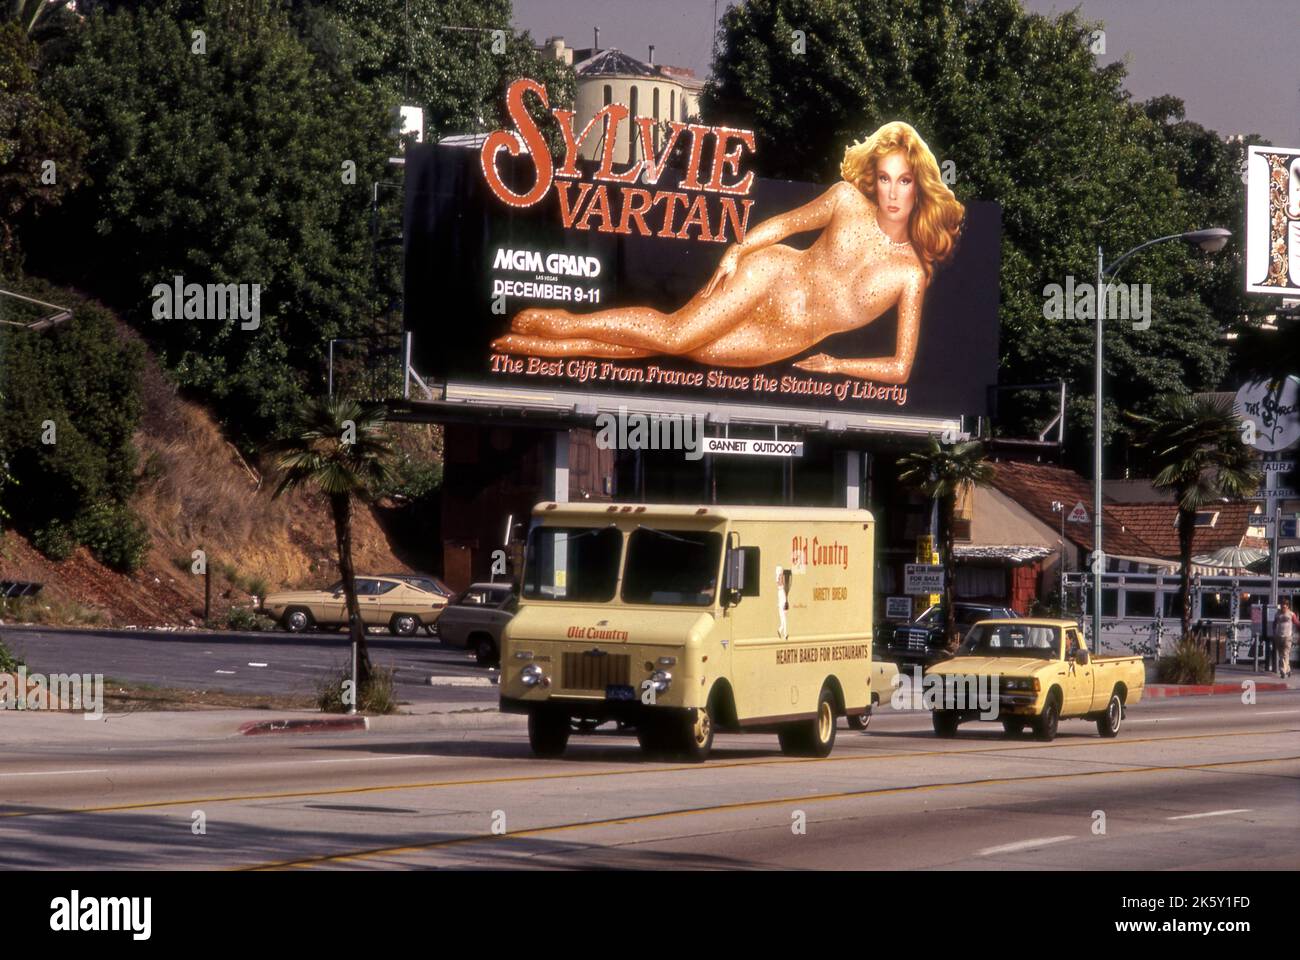 Sylvie Vartan billboard on the Sunse Strip, Stock Photo